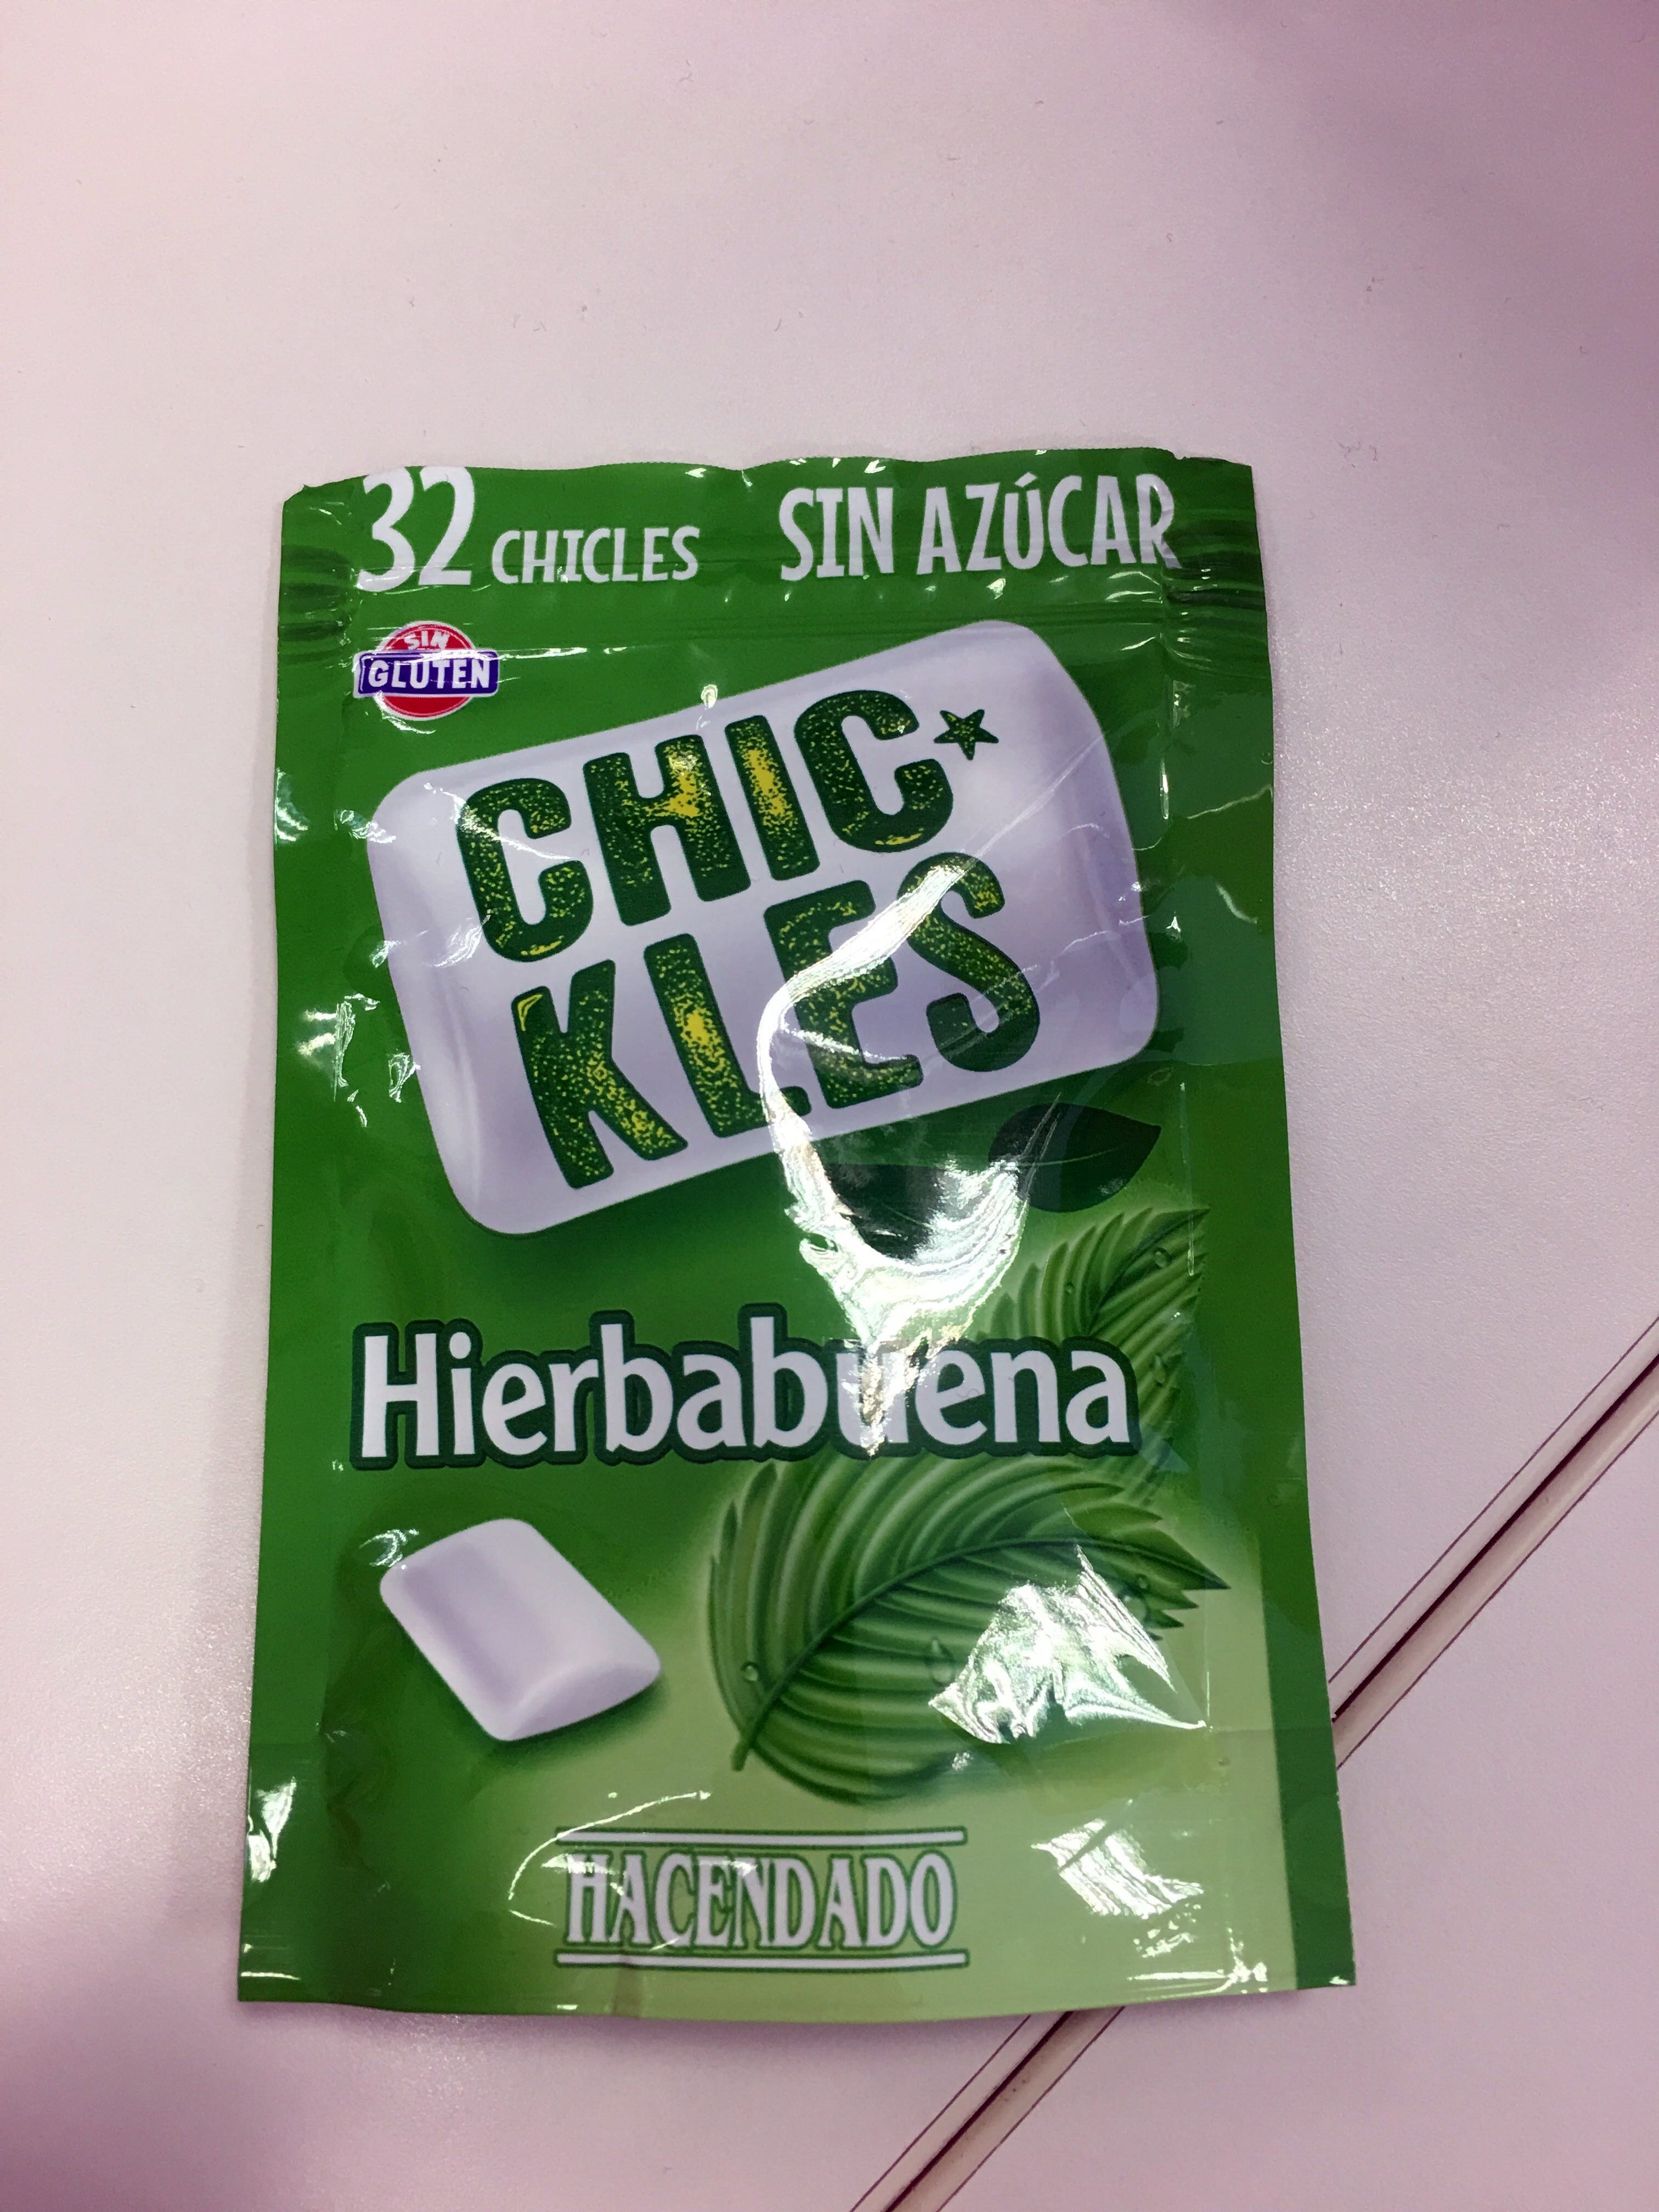 Chickles hierbabuena - Producte - es